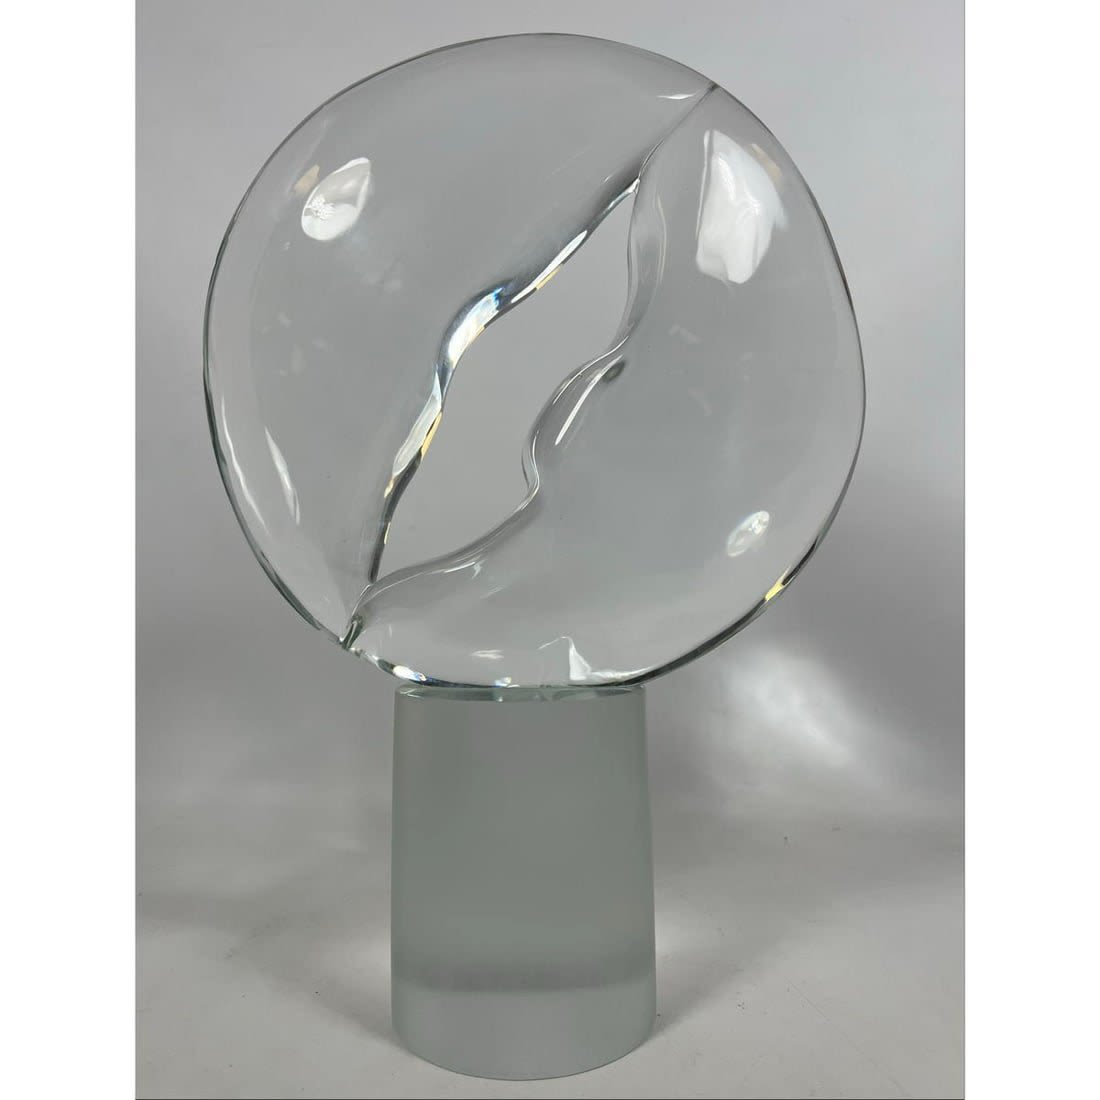 SEGUSO A V 84 Modernist Art Glass 362b47